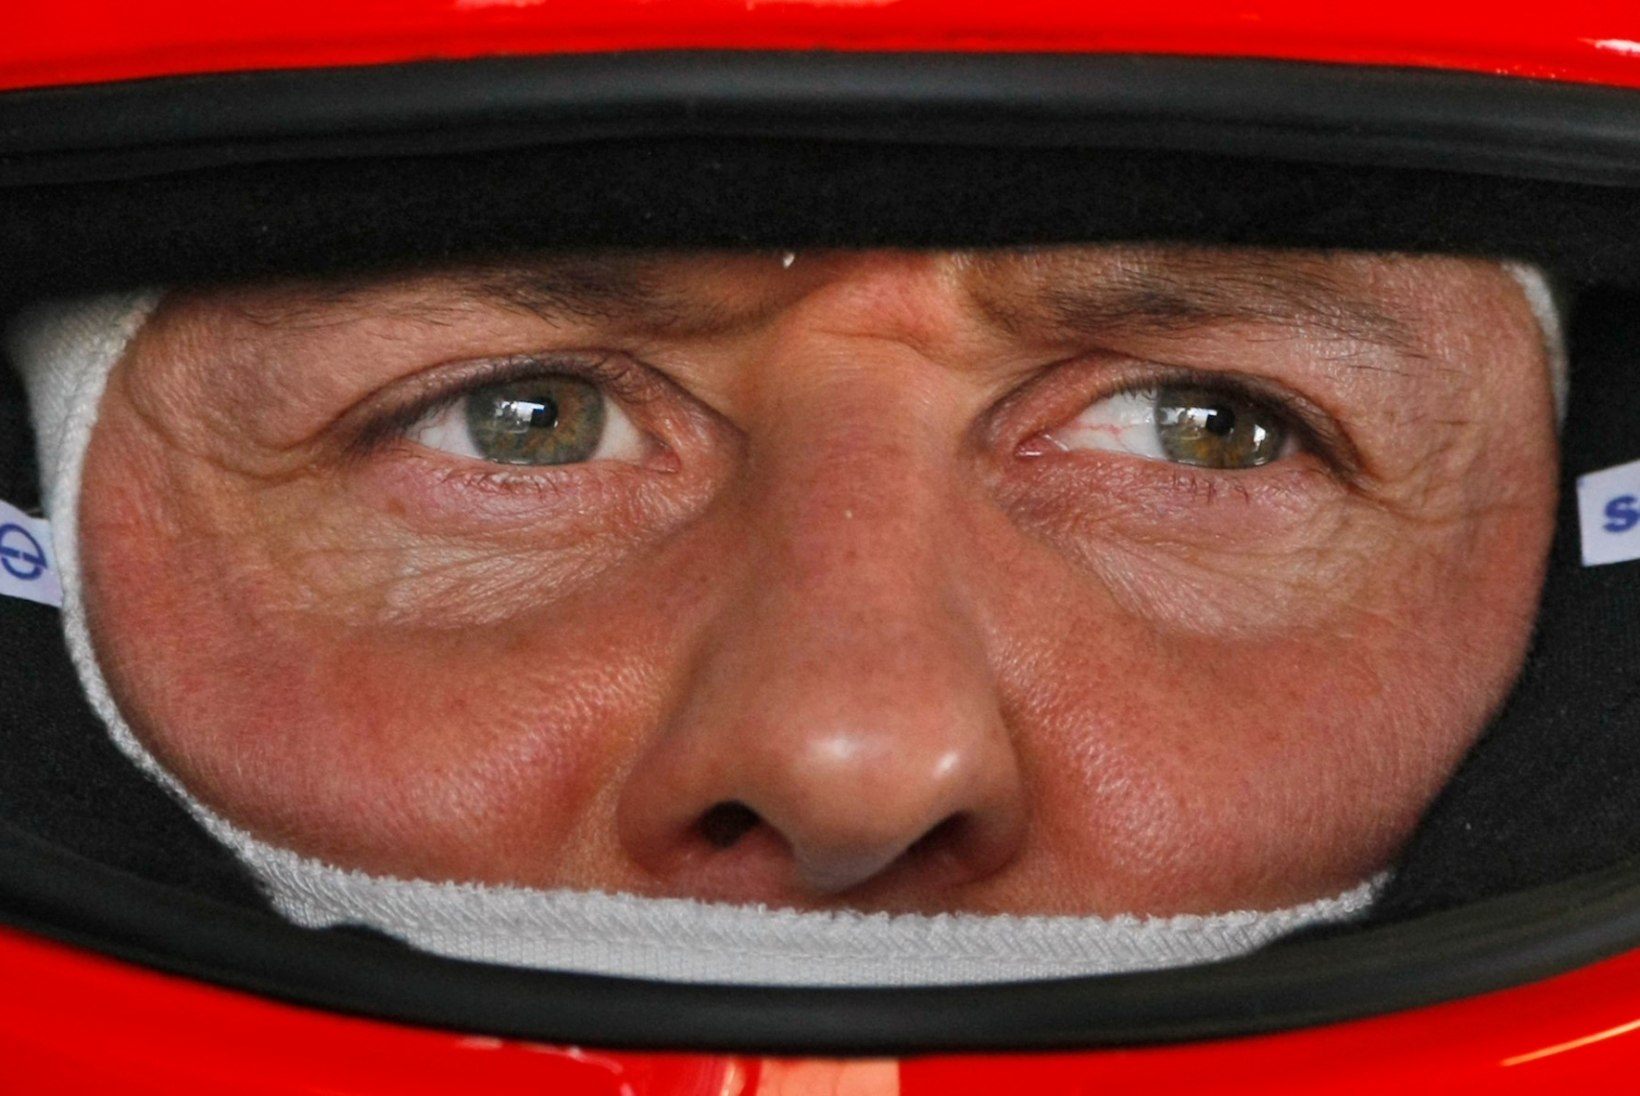 Eksperimentaalset ravi saanud Schumacher pääses koju